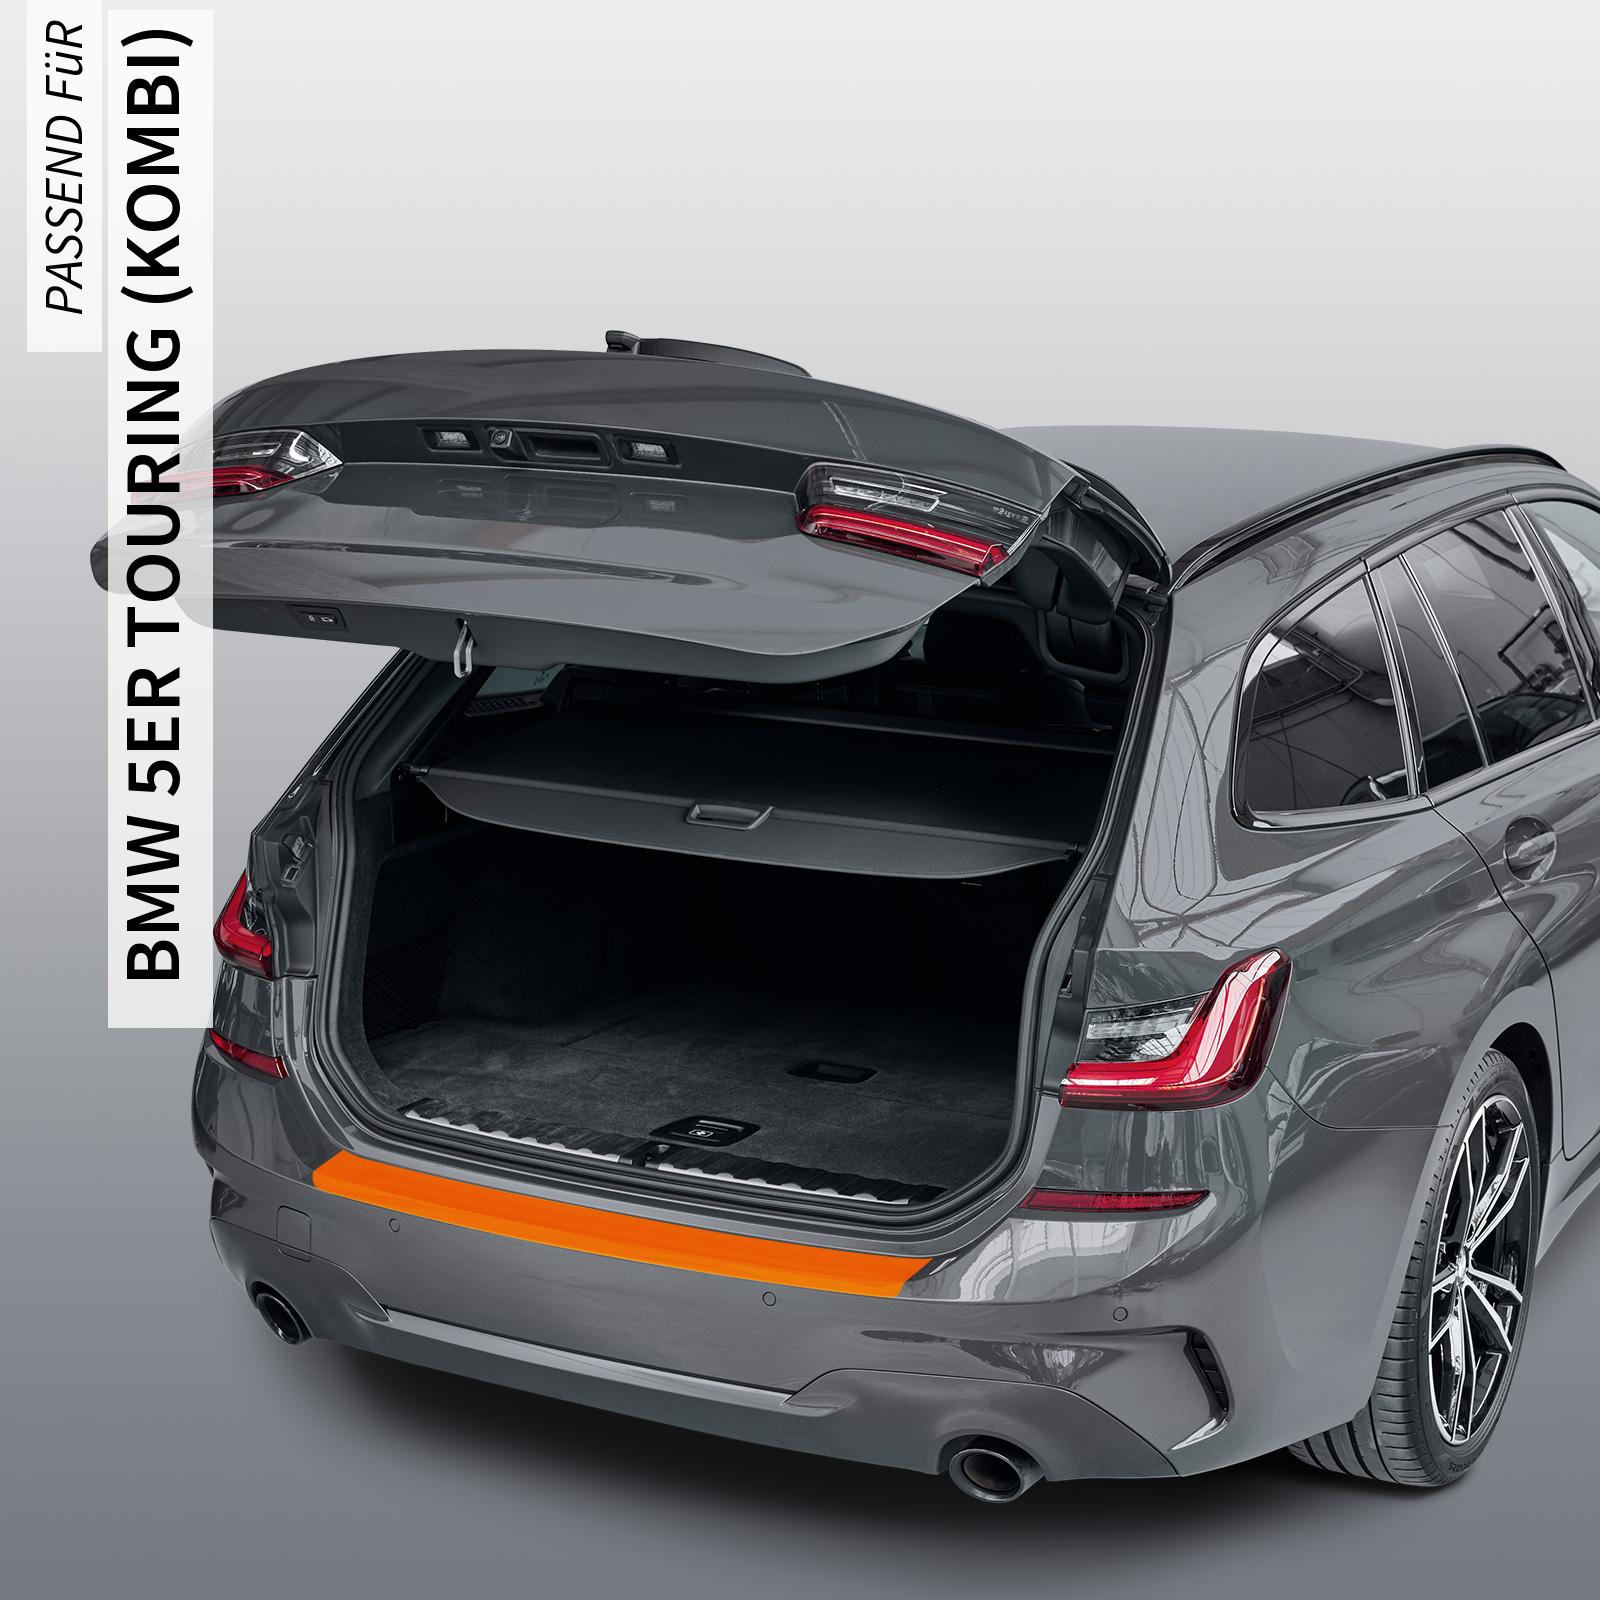 Ladekantenschutzfolie - Transparent Glatt MATT 110 µm stark  für BMW 5er Touring (Kombi) Typ G31, Facelift, ab BJ 07/2020